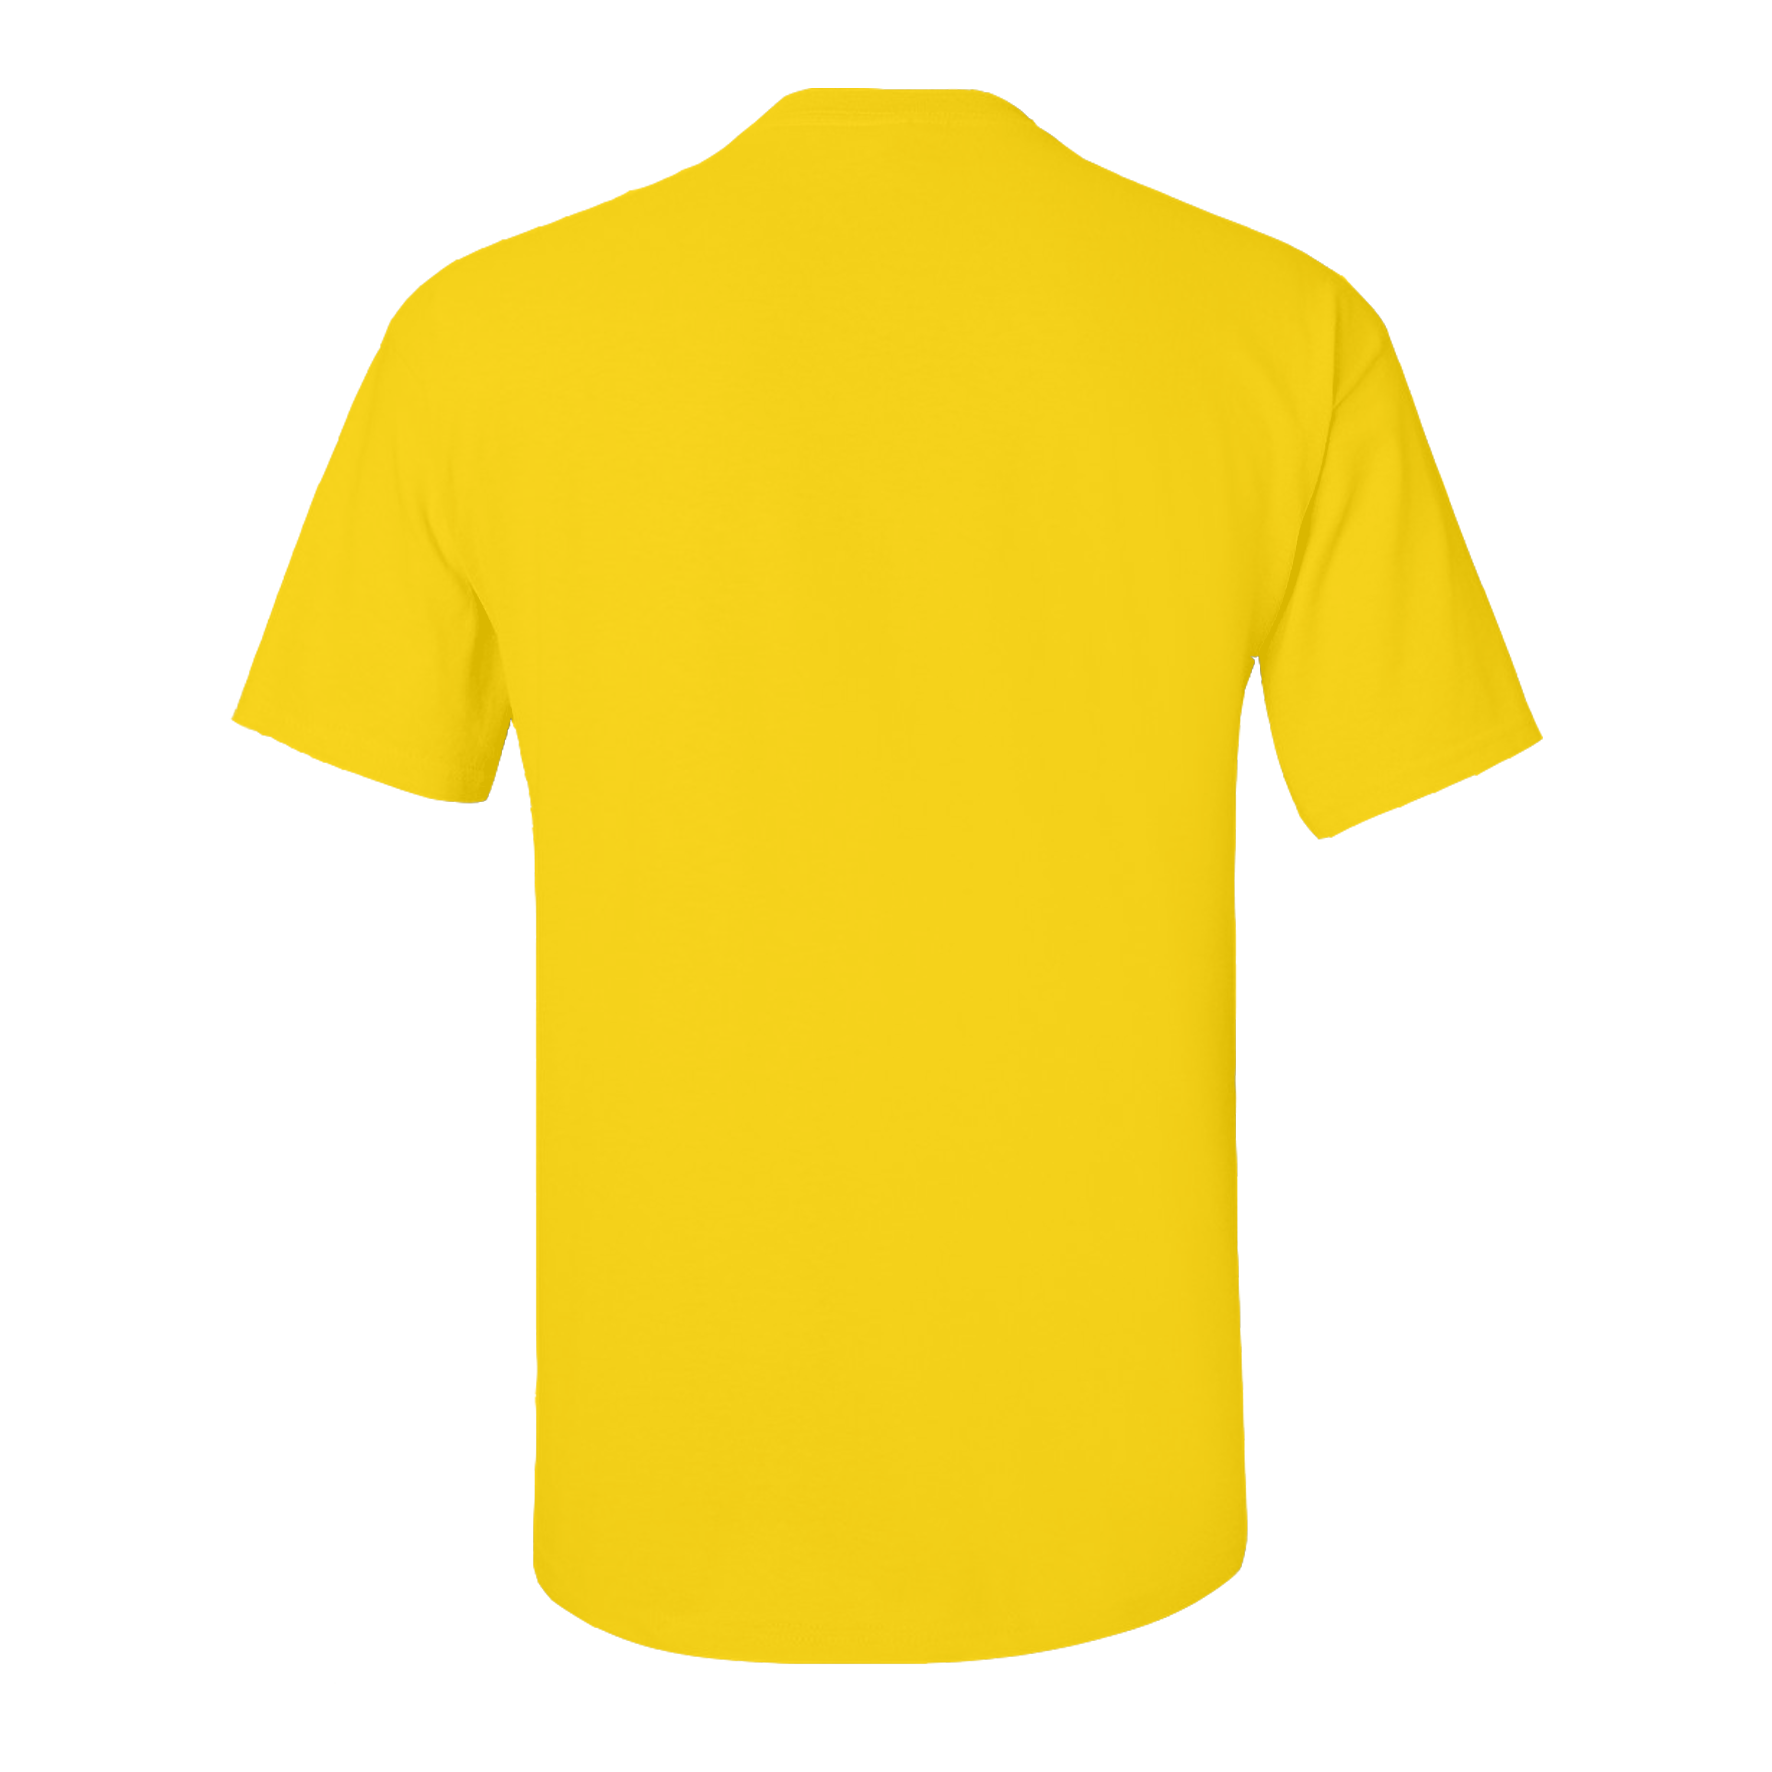 Yellow shirt clip art